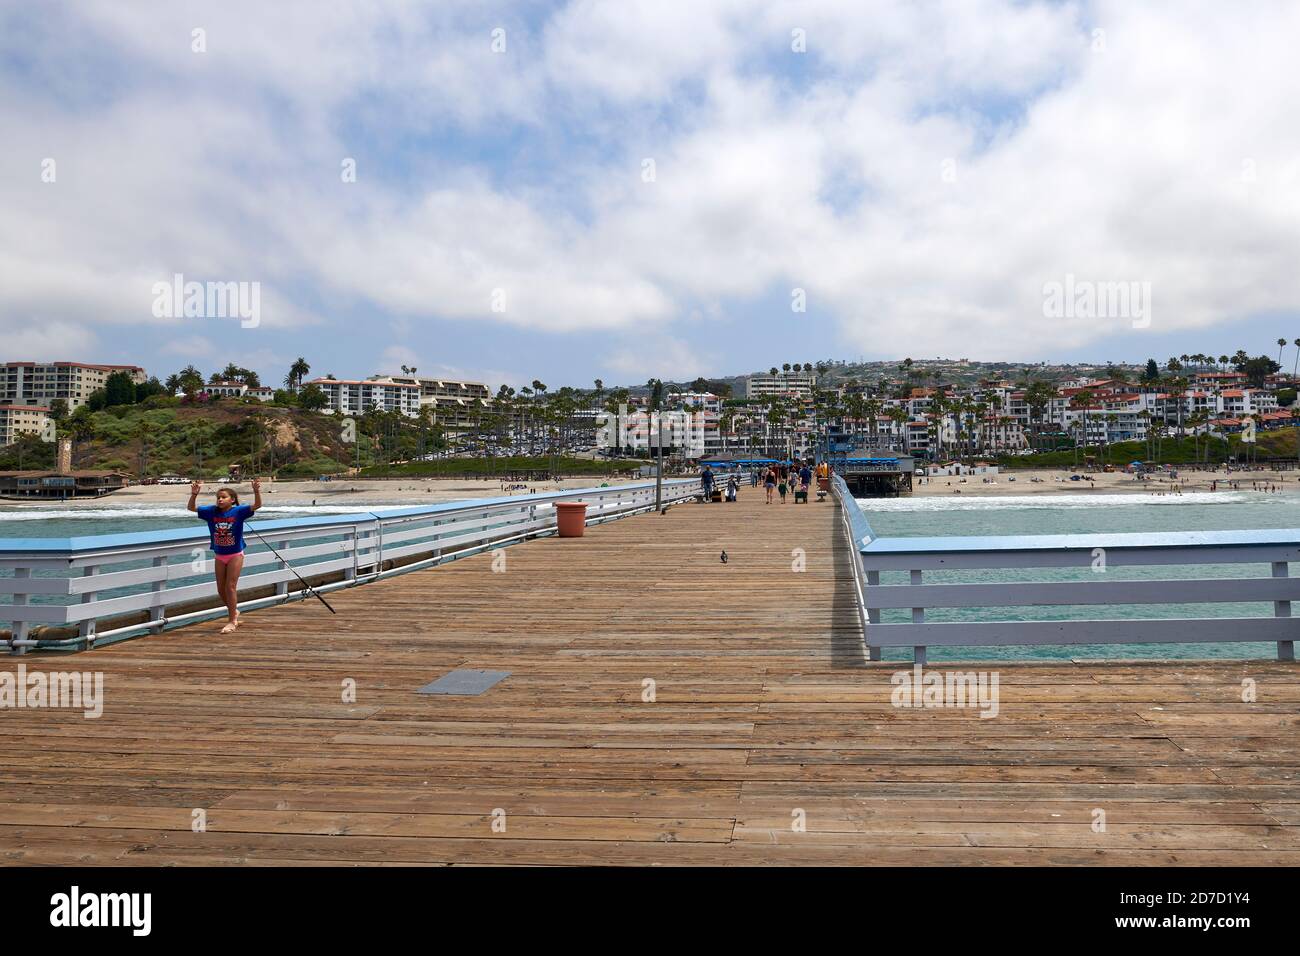 Pier at San Clemente, California, USA Stock Photo